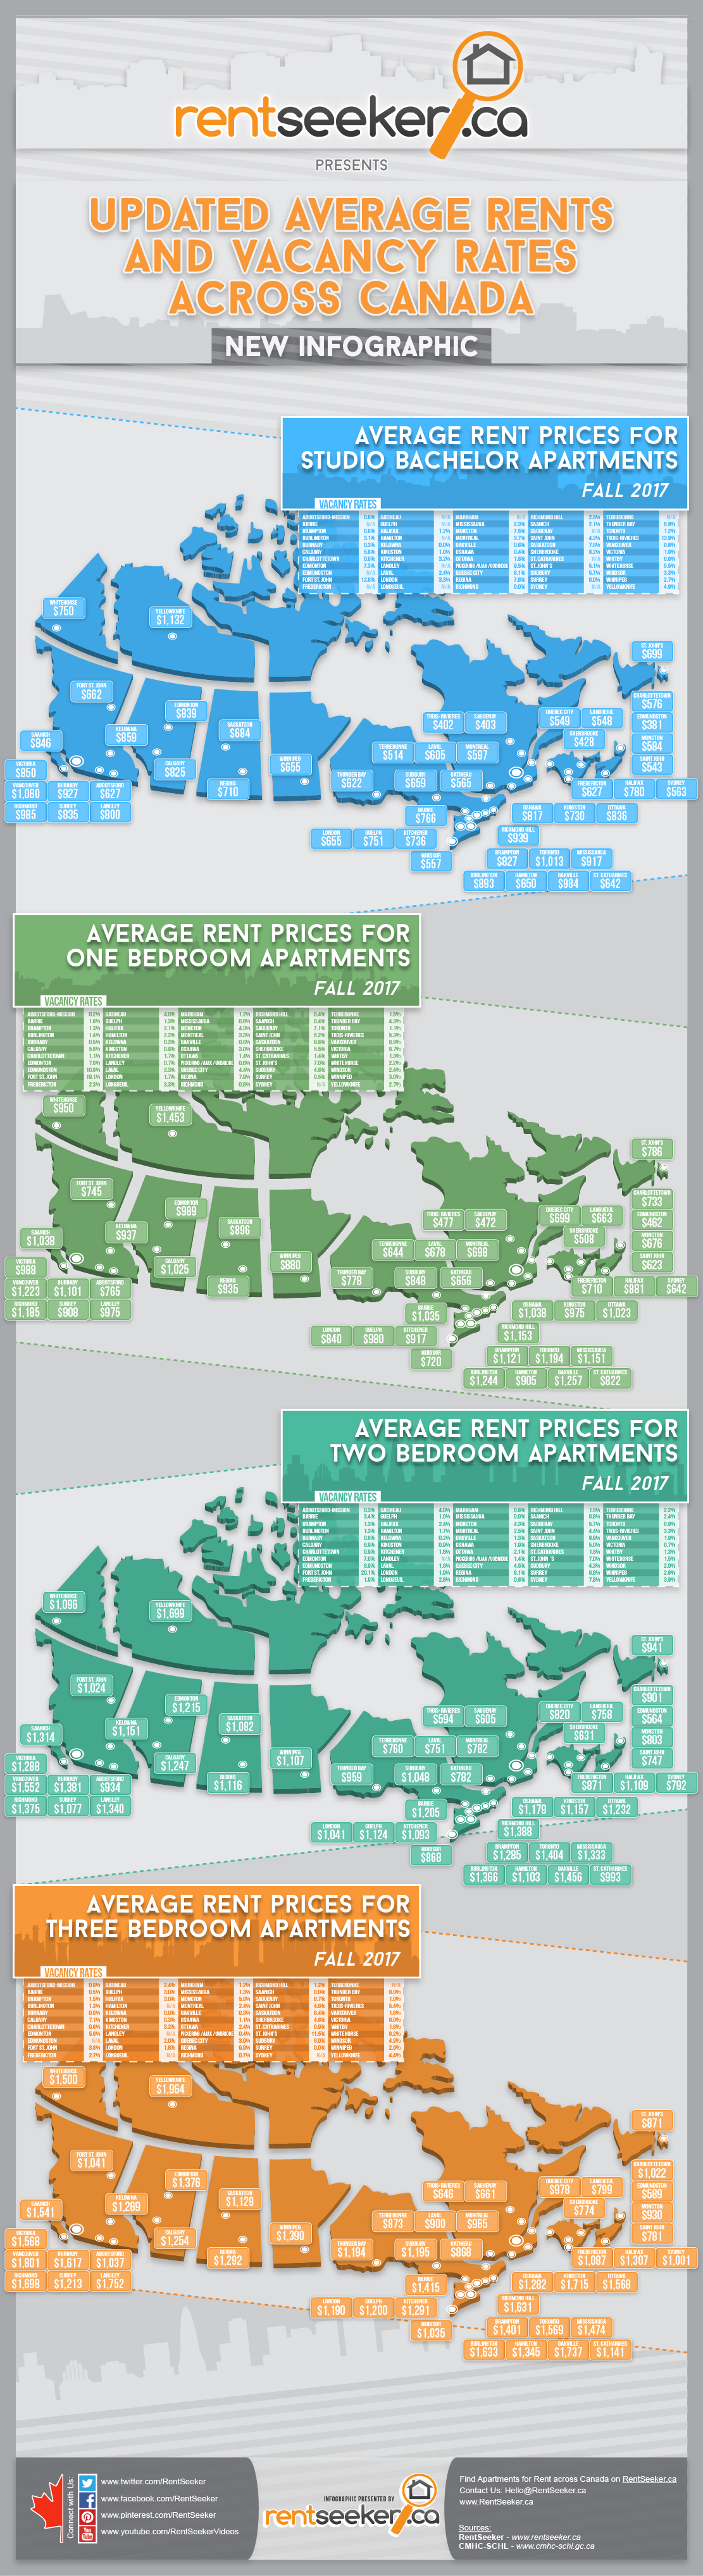 RentSeeker-Average-Rents-in-Canada